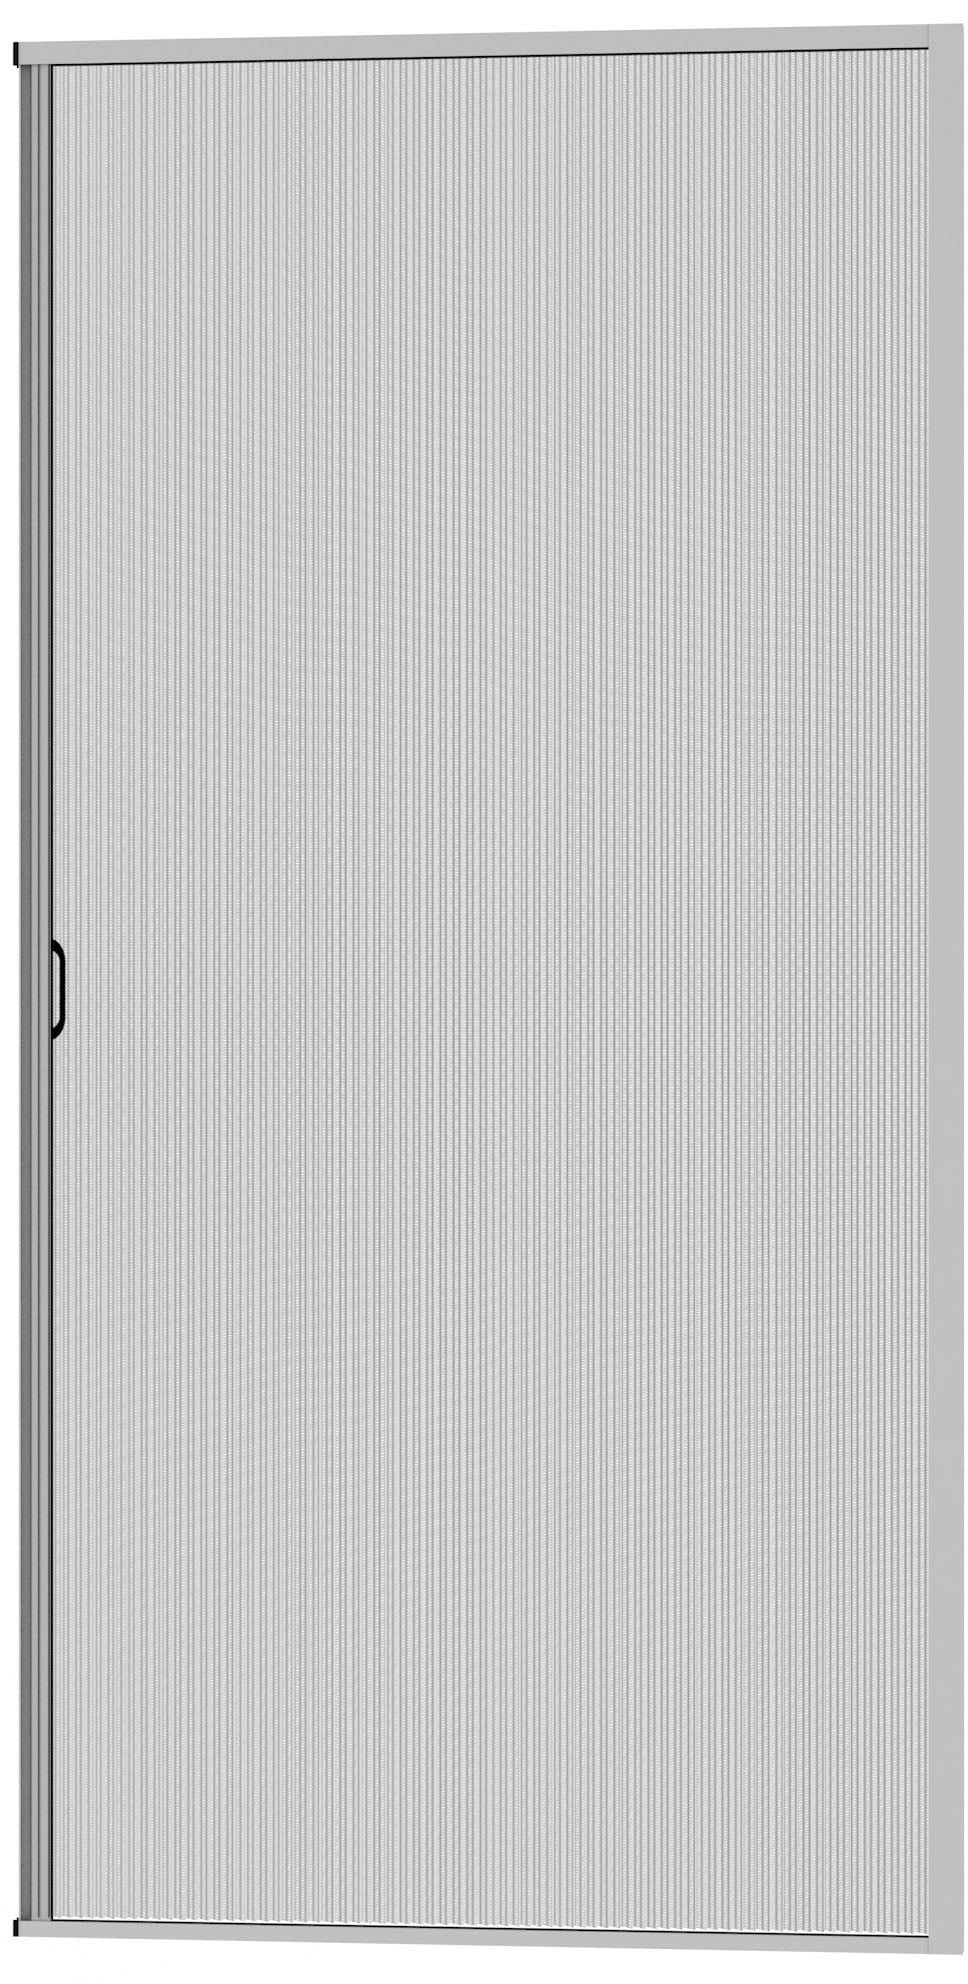 Insektenschutz-Tür, weiß/anthrazit, BxH: 125x220 cm